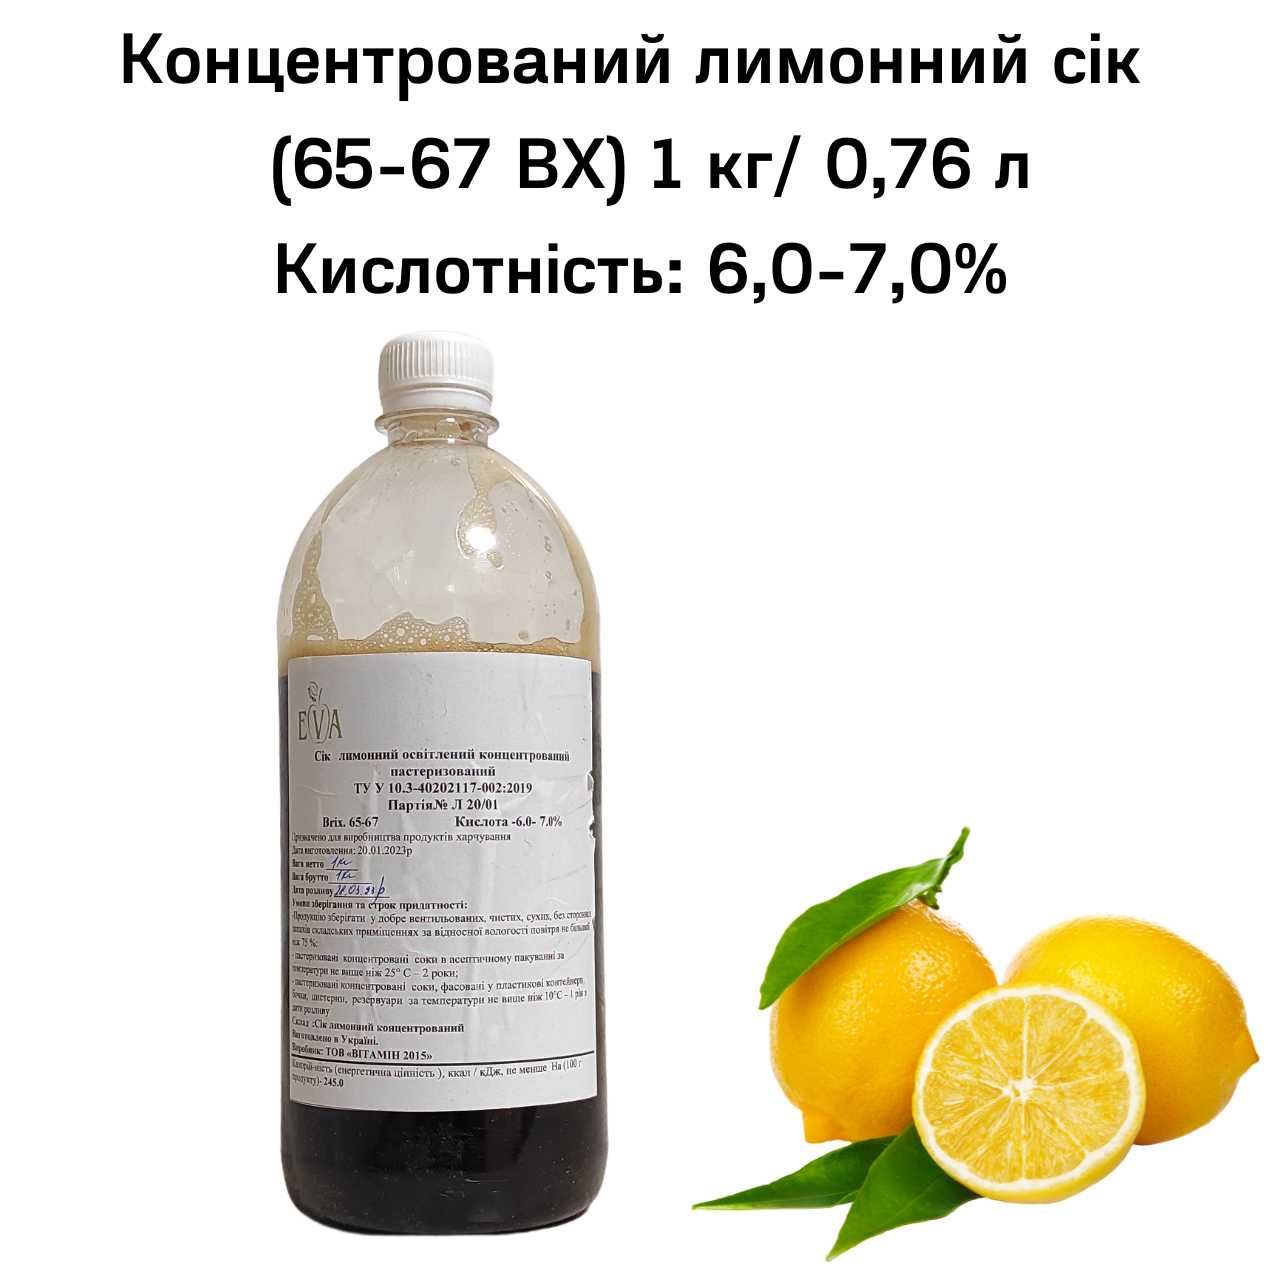 Конц. Лимонный Сок Неосв. с Мякотью (ВХ 65-67) канистра 1 кг/0,76 л